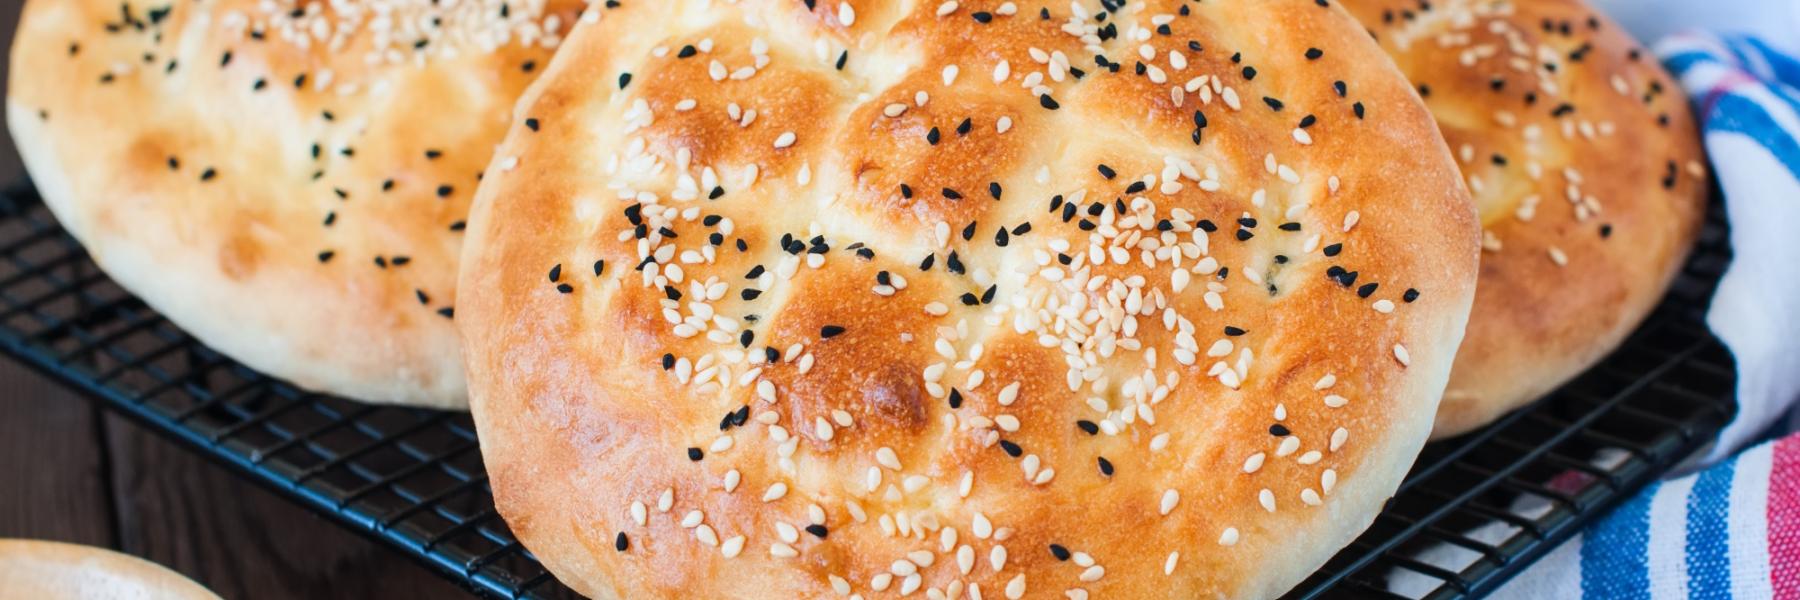  الخبز التركي بالسمسم